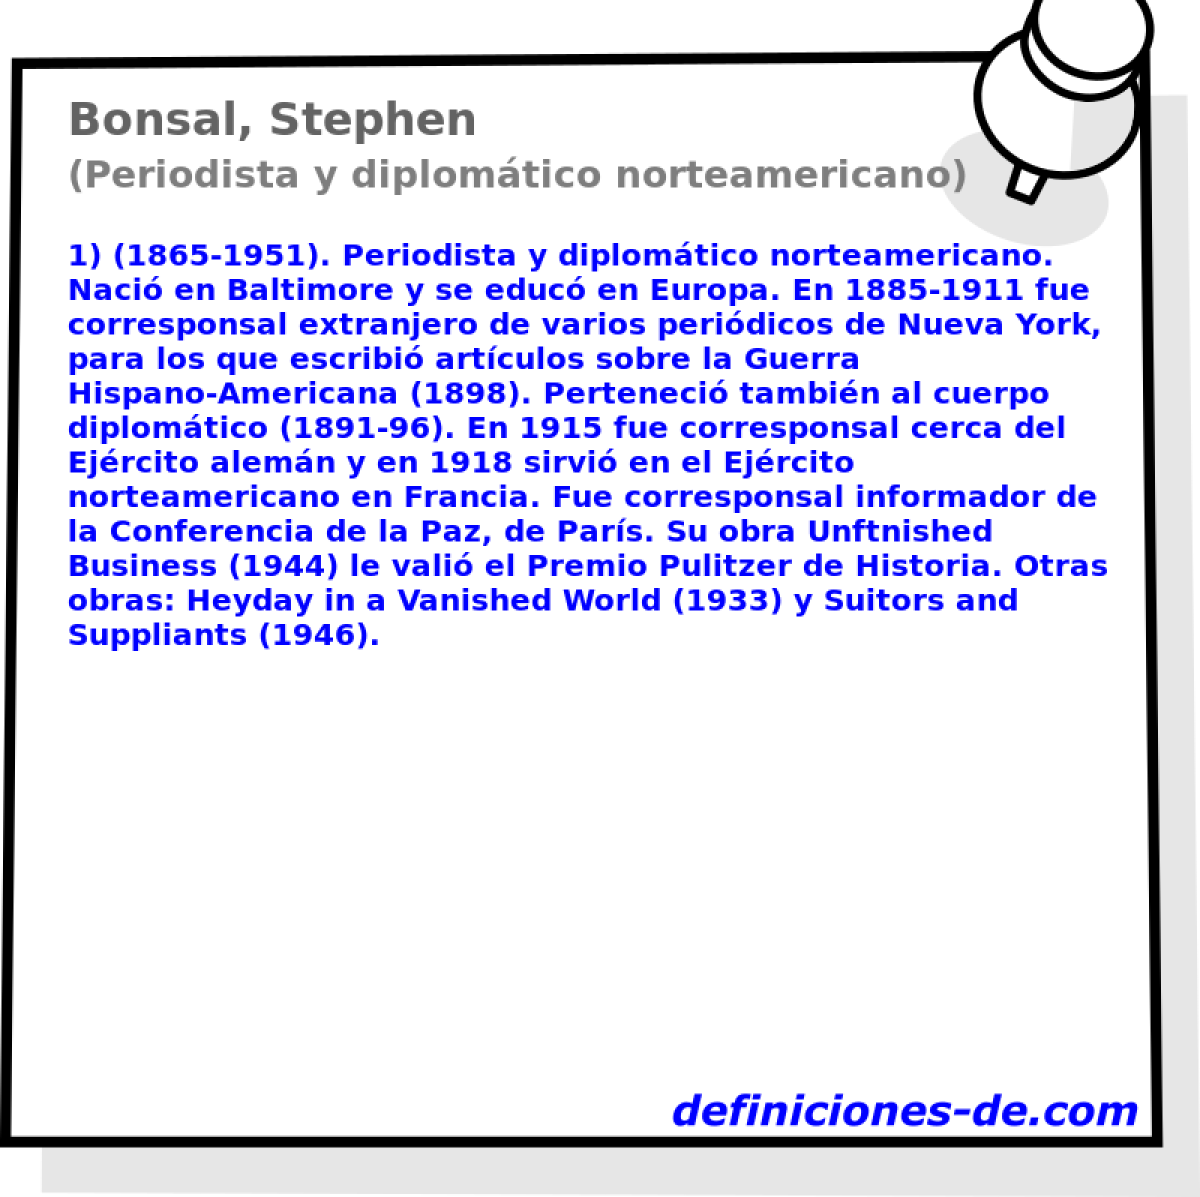 Bonsal, Stephen (Periodista y diplomtico norteamericano)